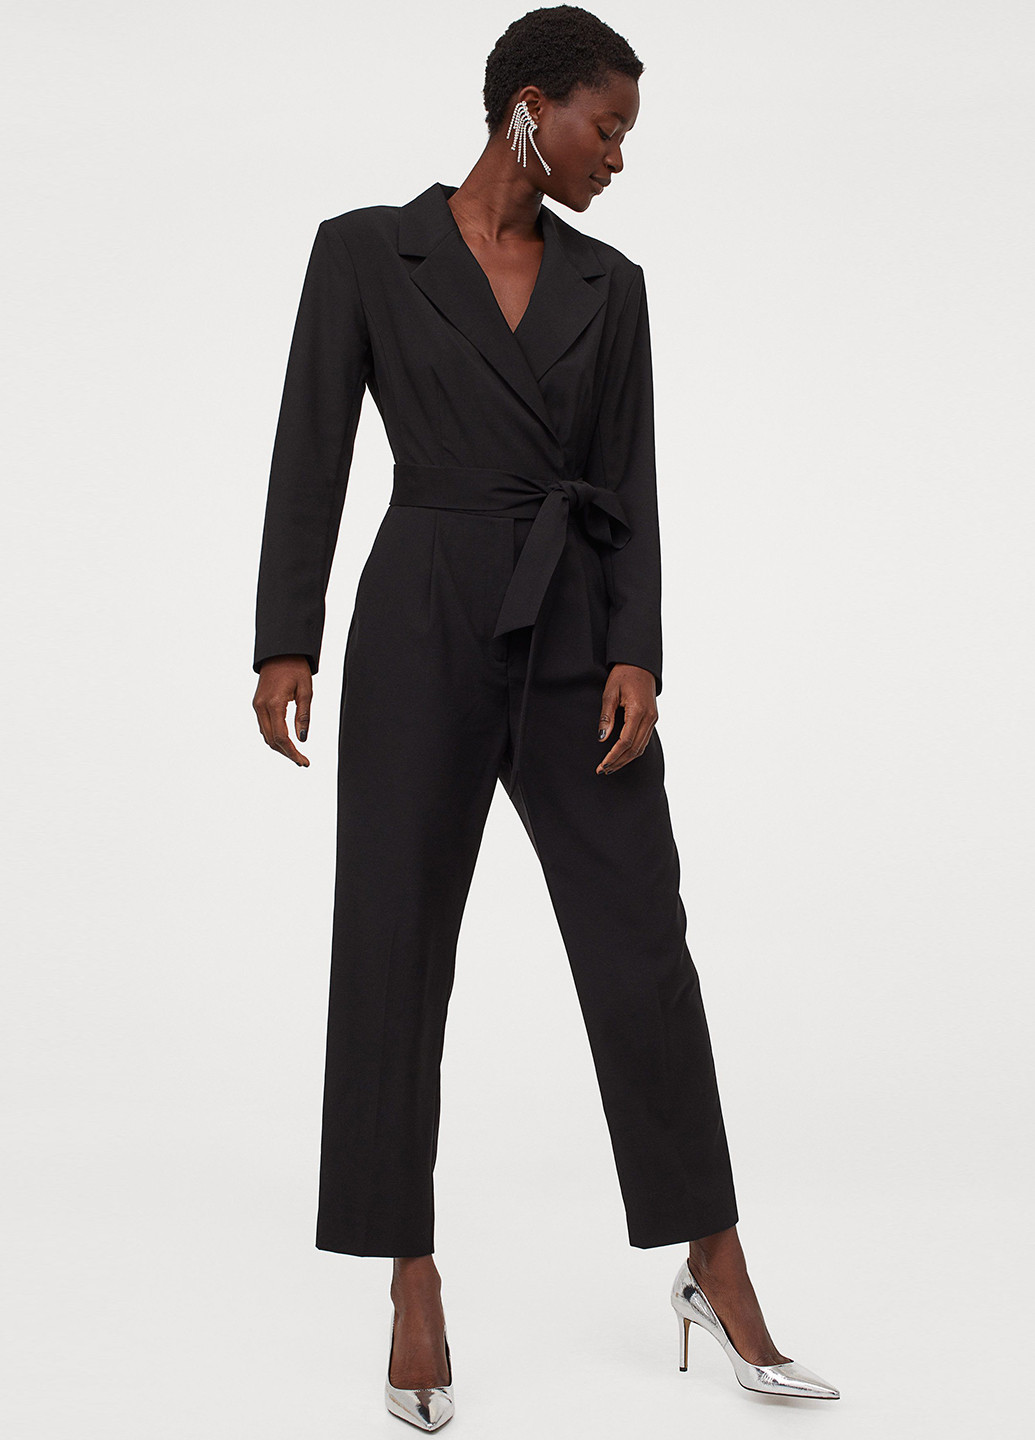 Комбинезон H&M комбинезон-брюки однотонный чёрный деловой полиэстер